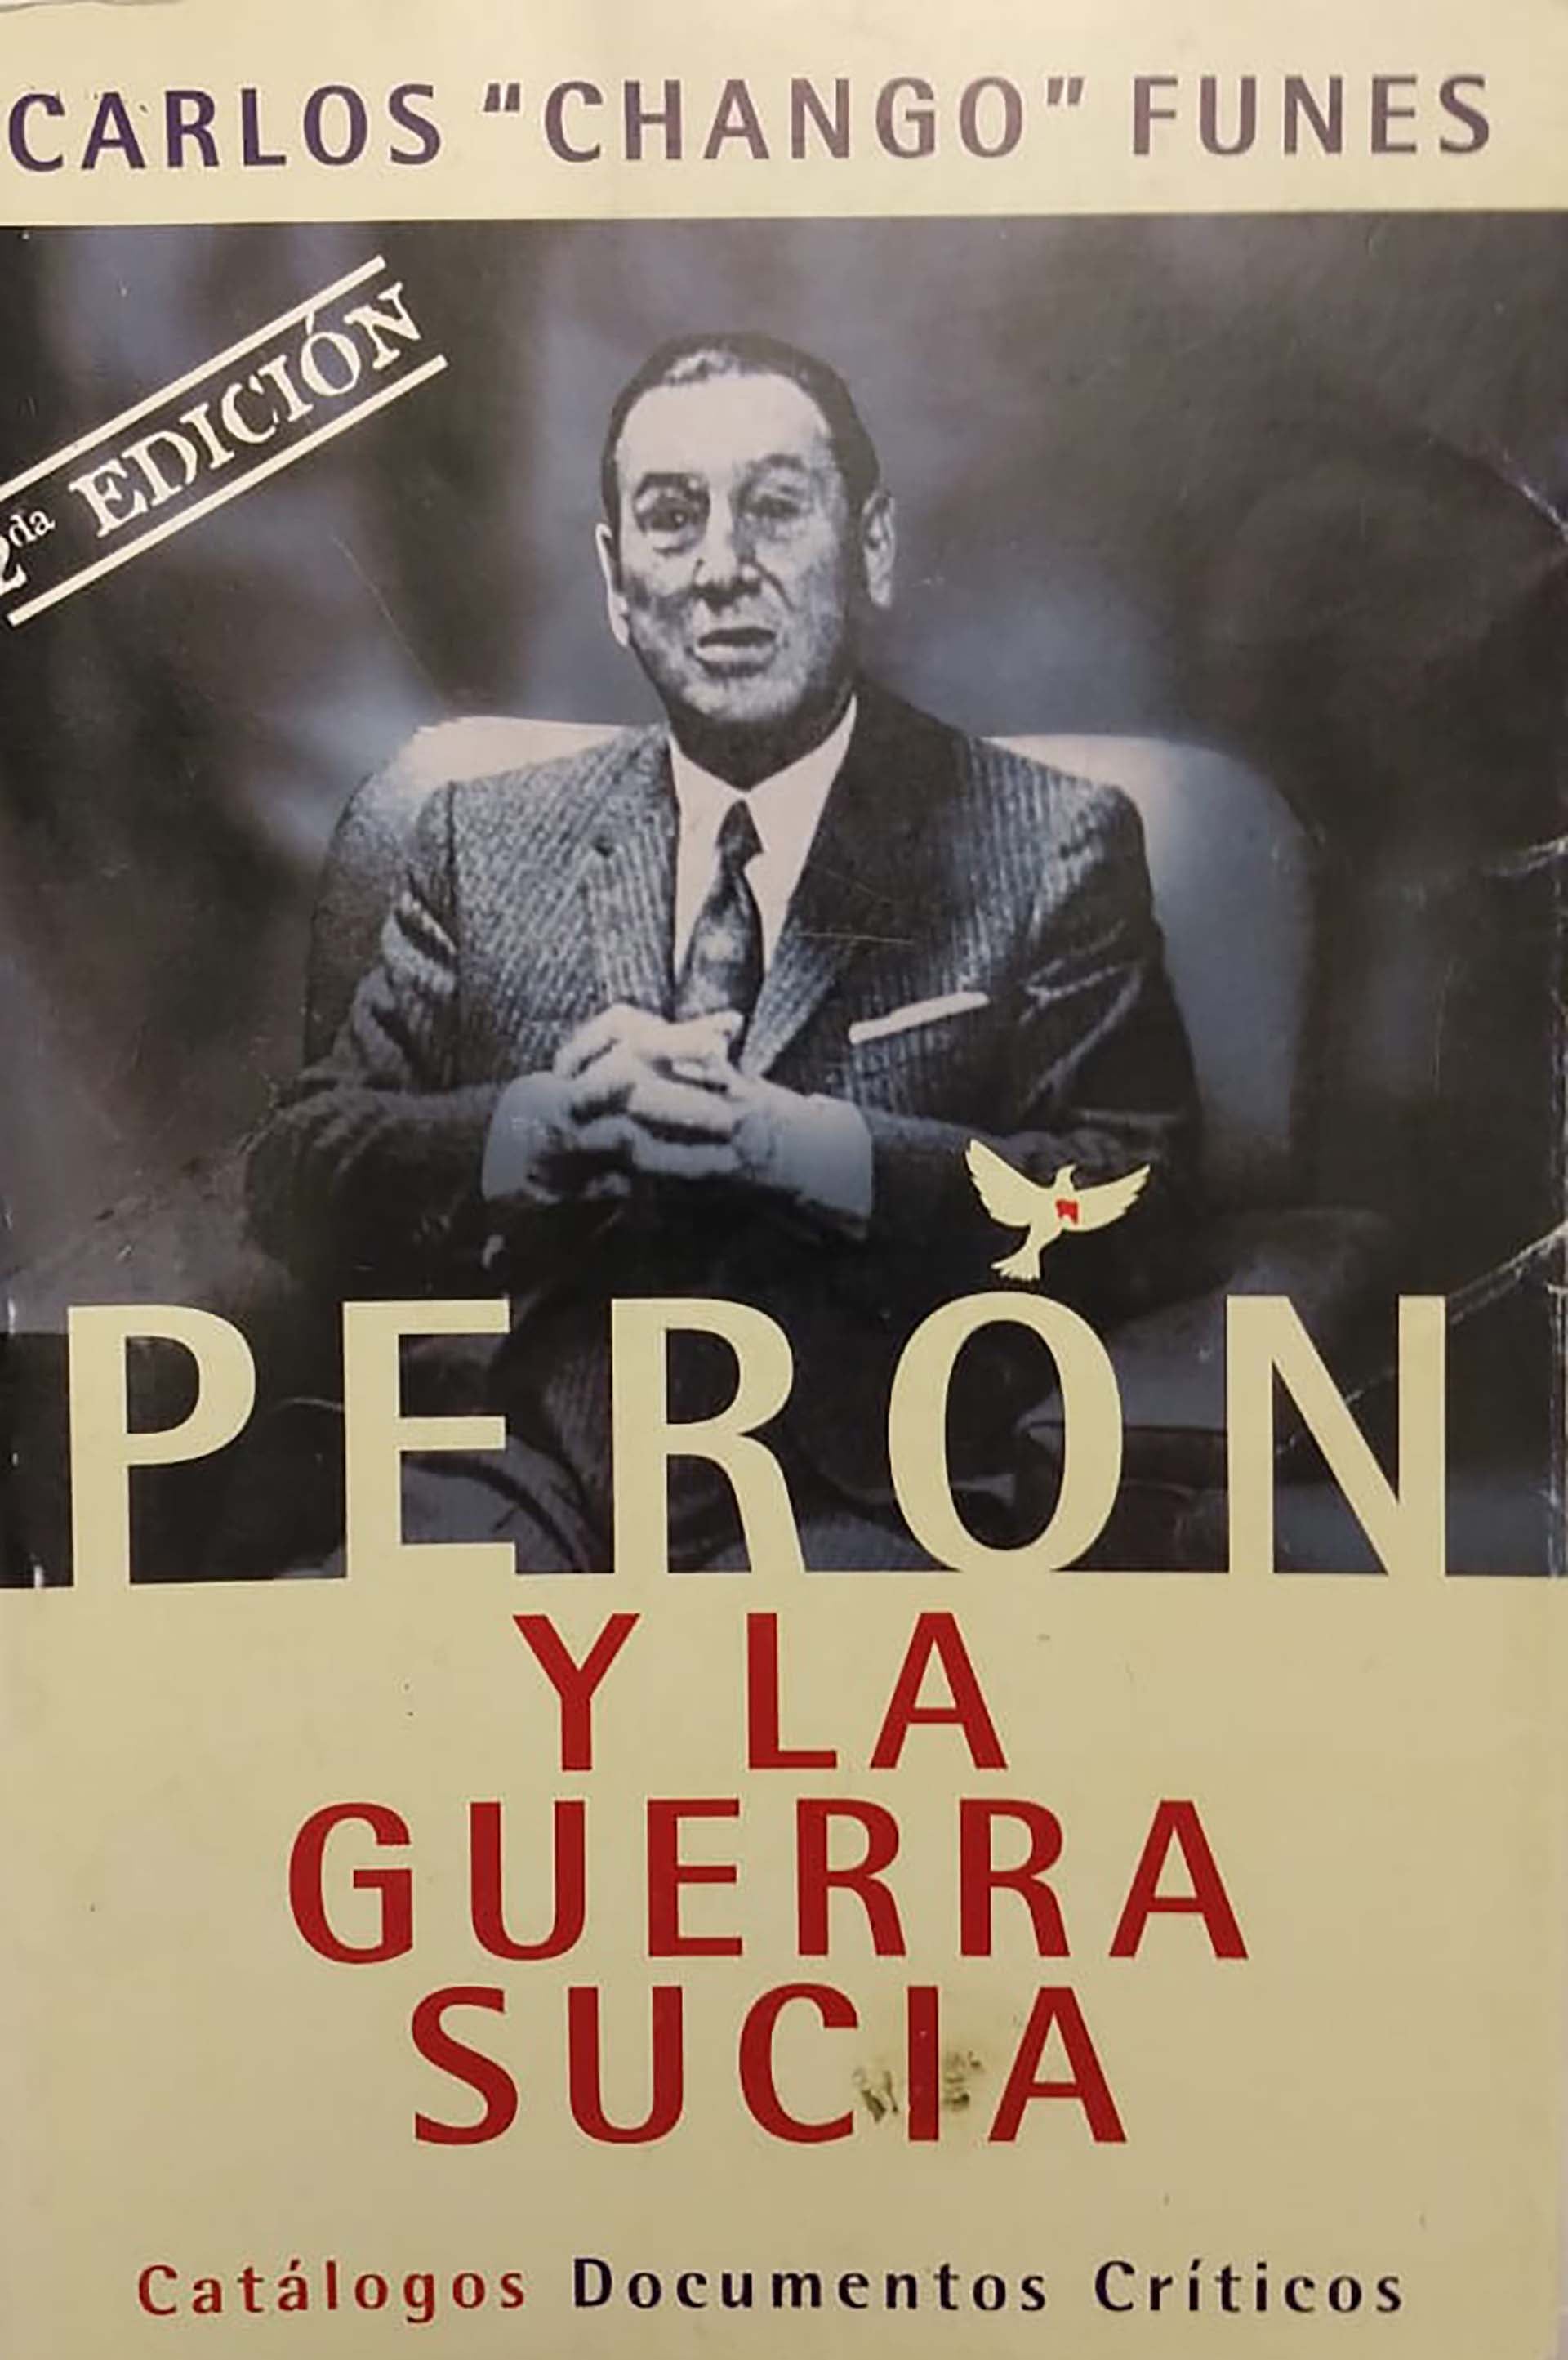 El libro de Carlos "Chango" Funes sobre el regreso de Perón y su tercera presidencia